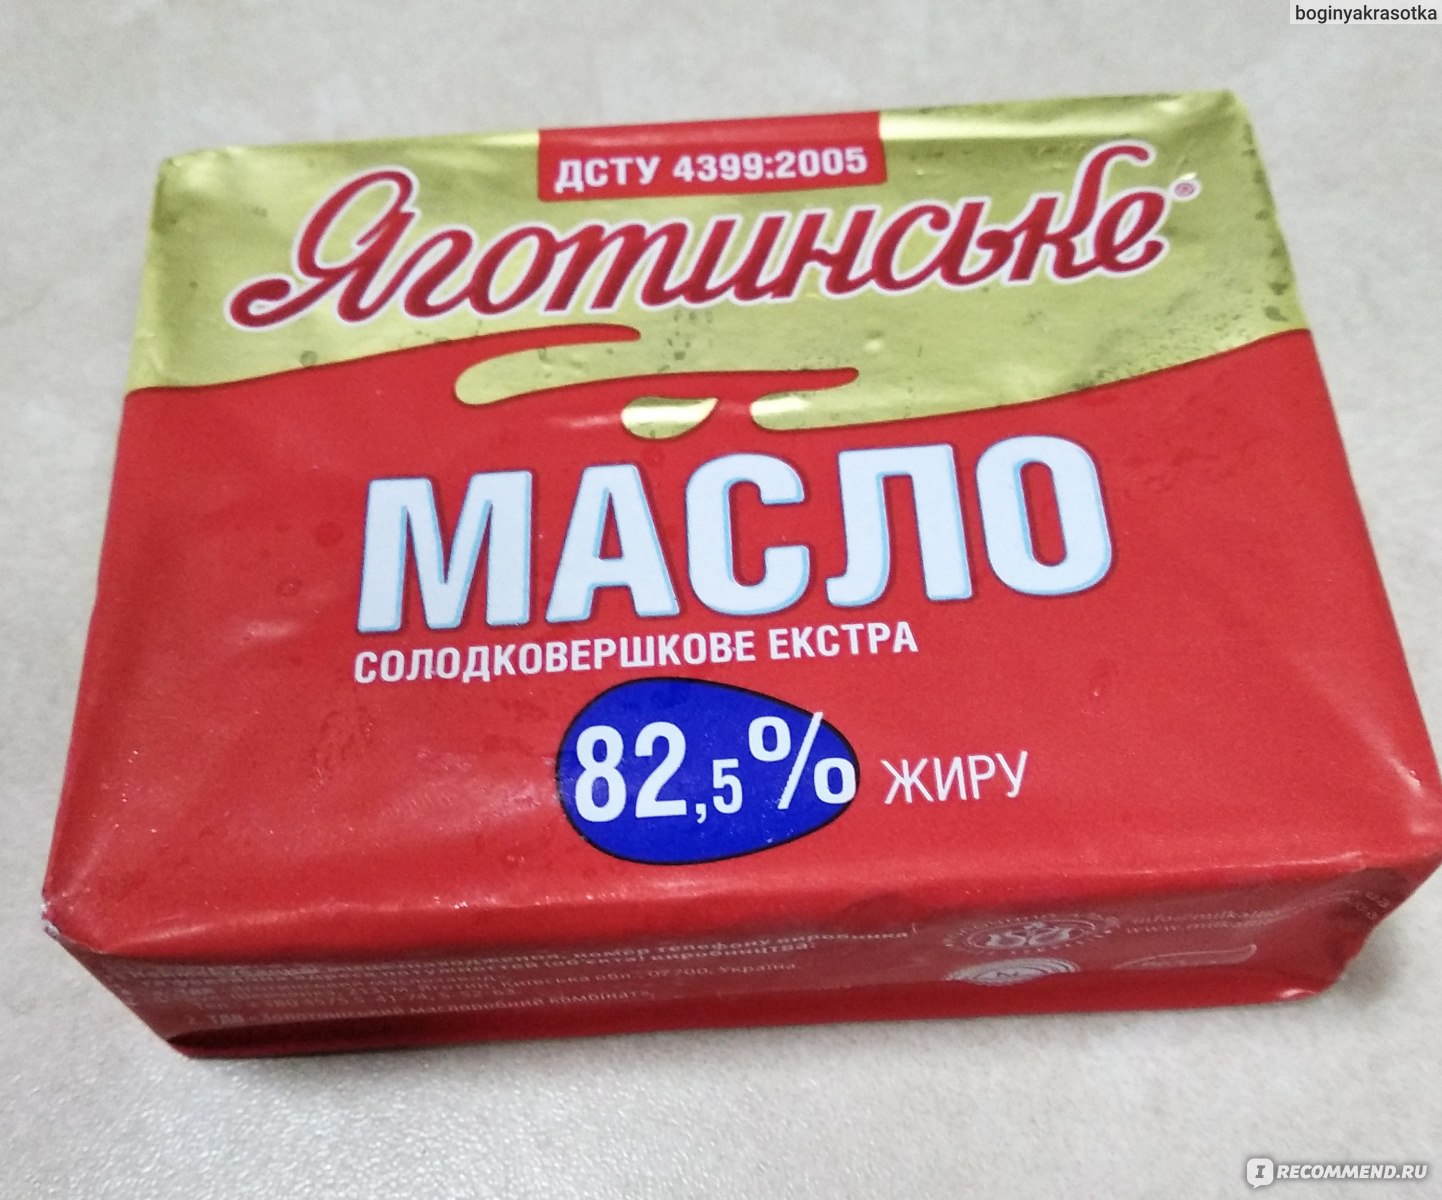 Масло сливочное Яготинское сладкосливочное эстра 82,5% - «Не совсем то .